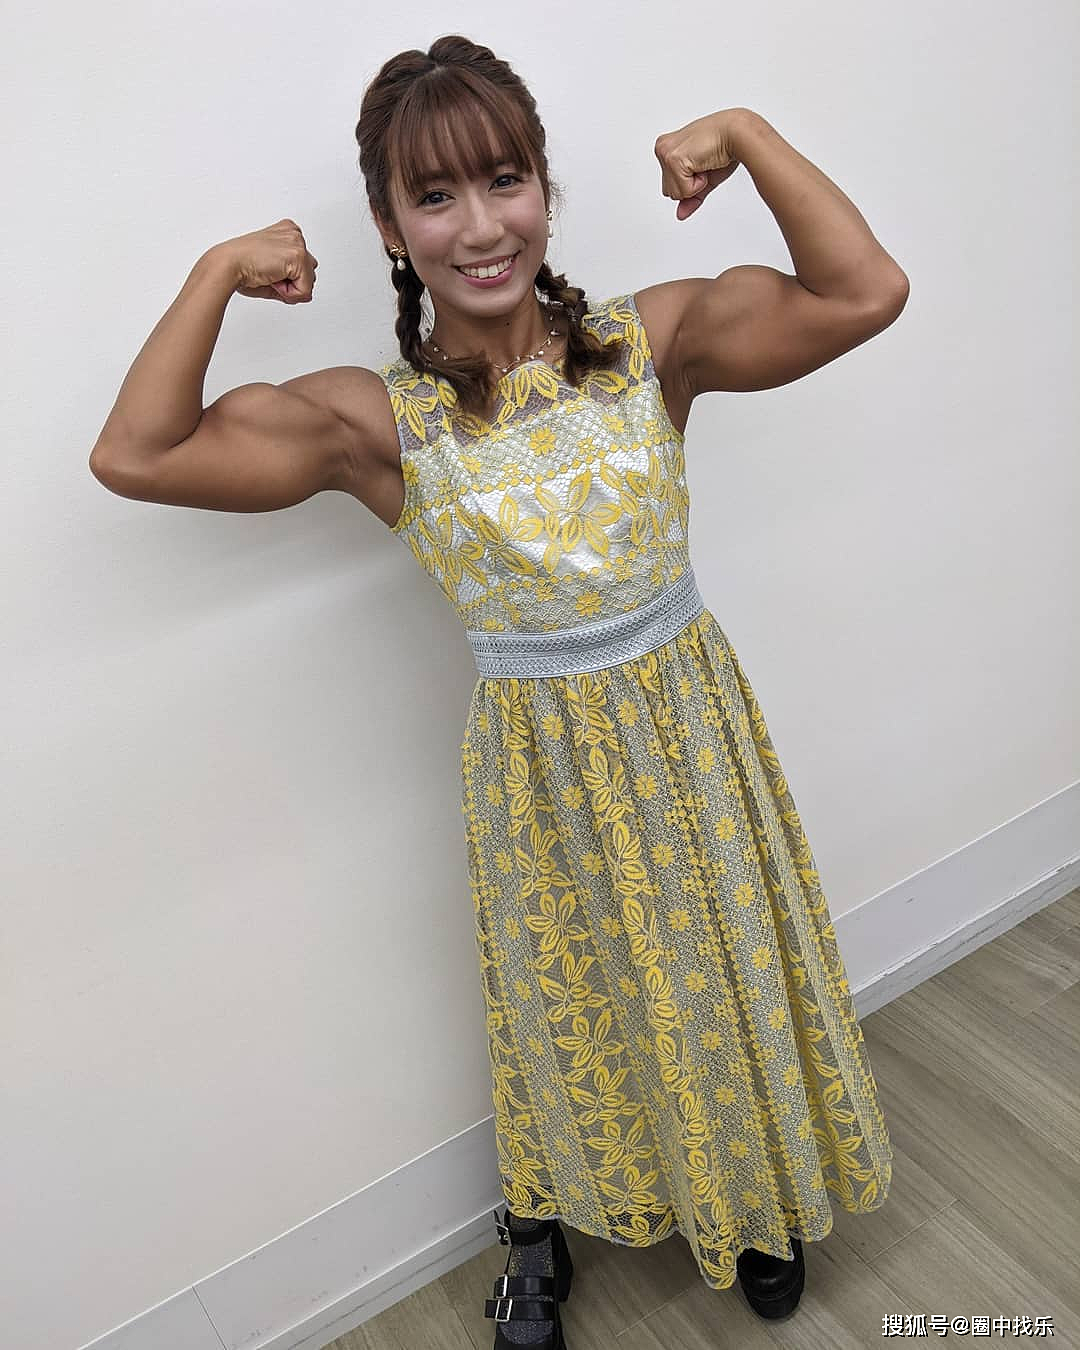 一米五的她，可爱脸蛋+强壮肌肉，被称为“日本最强肌肉美少女” - 2